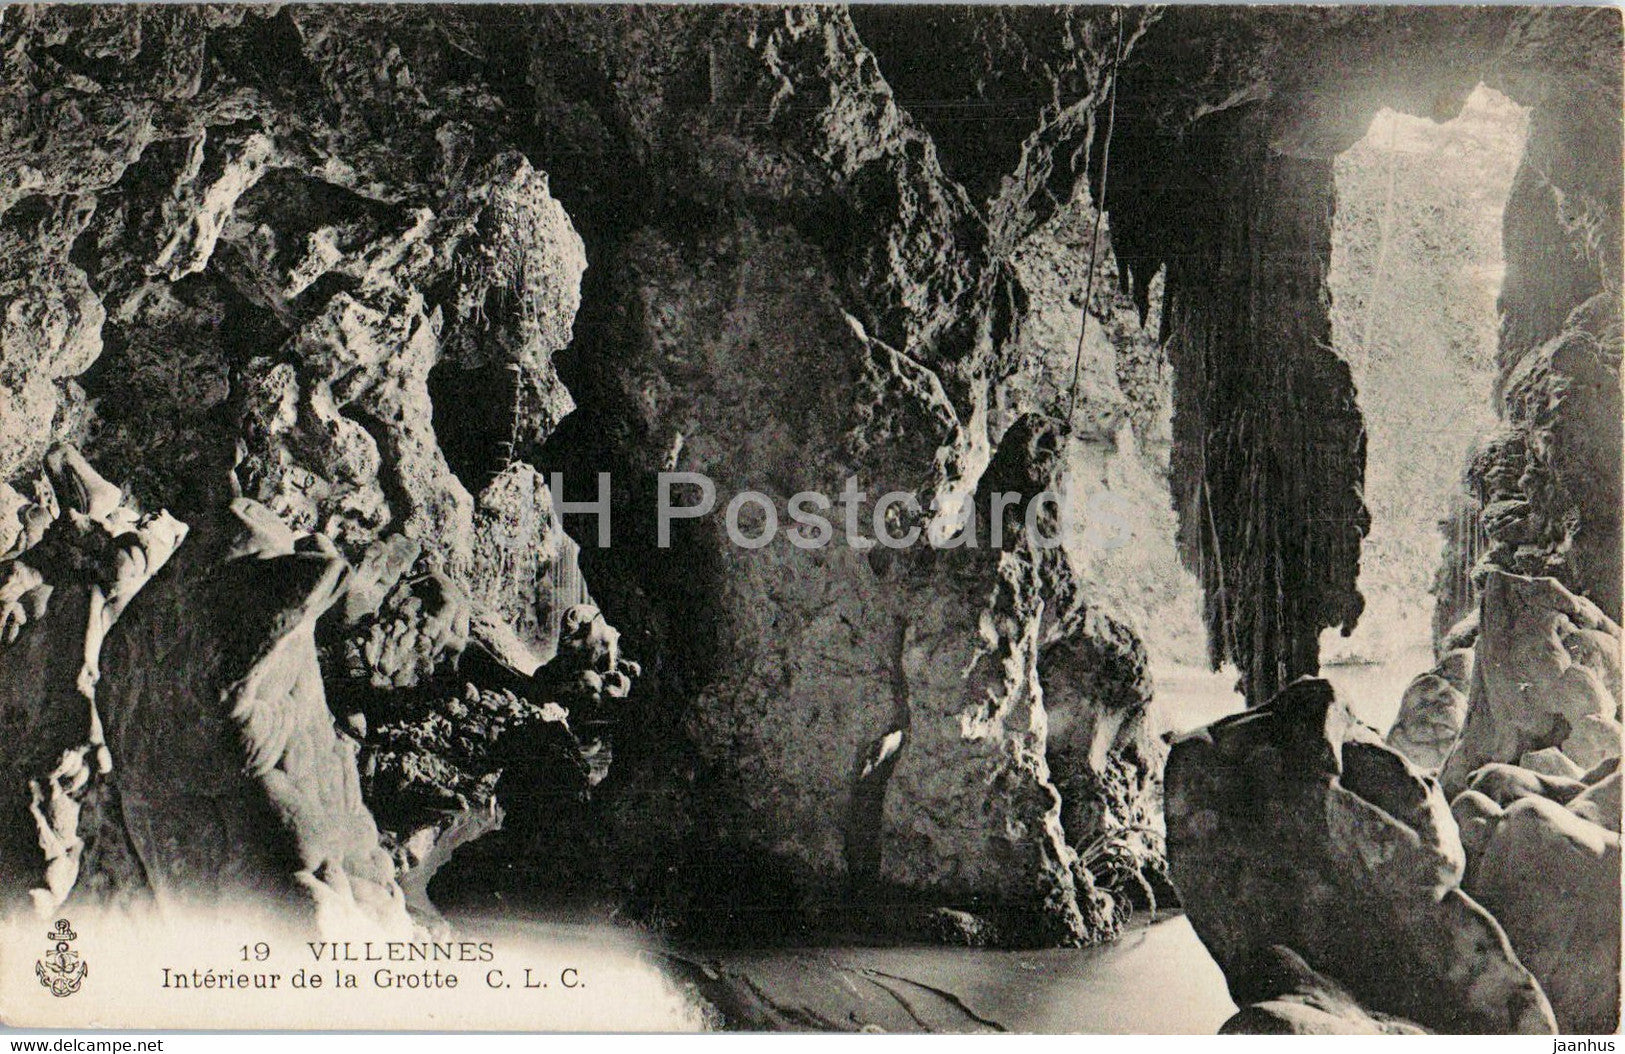 Villennes - Interieur de la Grotte - cave - 19 - old postcard - France - unused - JH Postcards